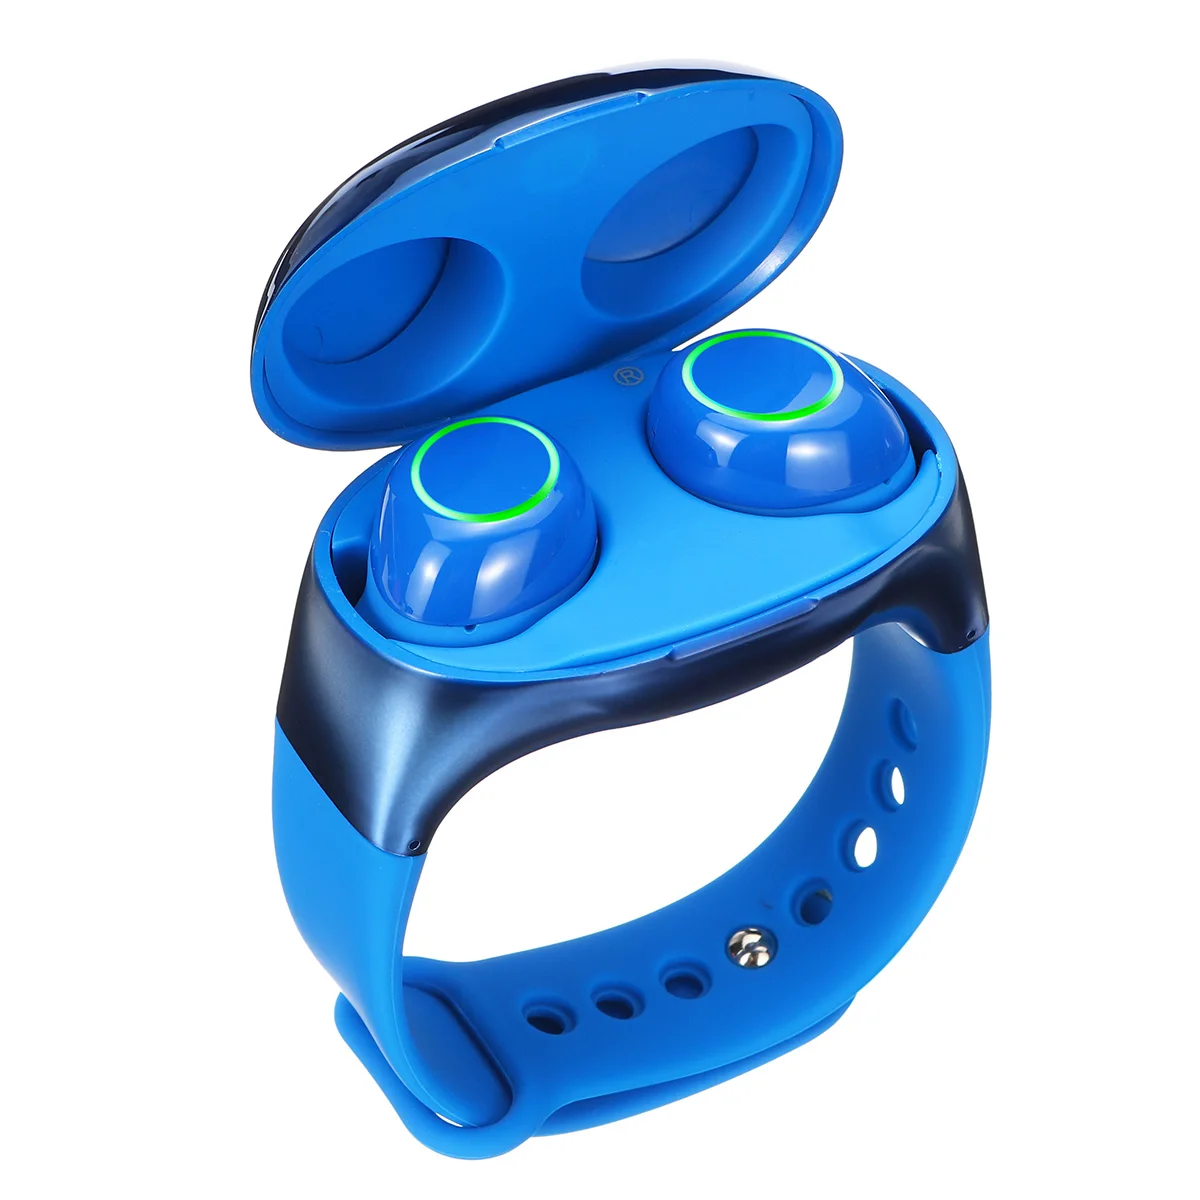 TWS беспроводной bluetooth 5,0 сенсорный ремешок наушники 2 в 1 браслет стерео Спортивная гарнитура наушники для iPhone Android телефон - Цвет: Синий